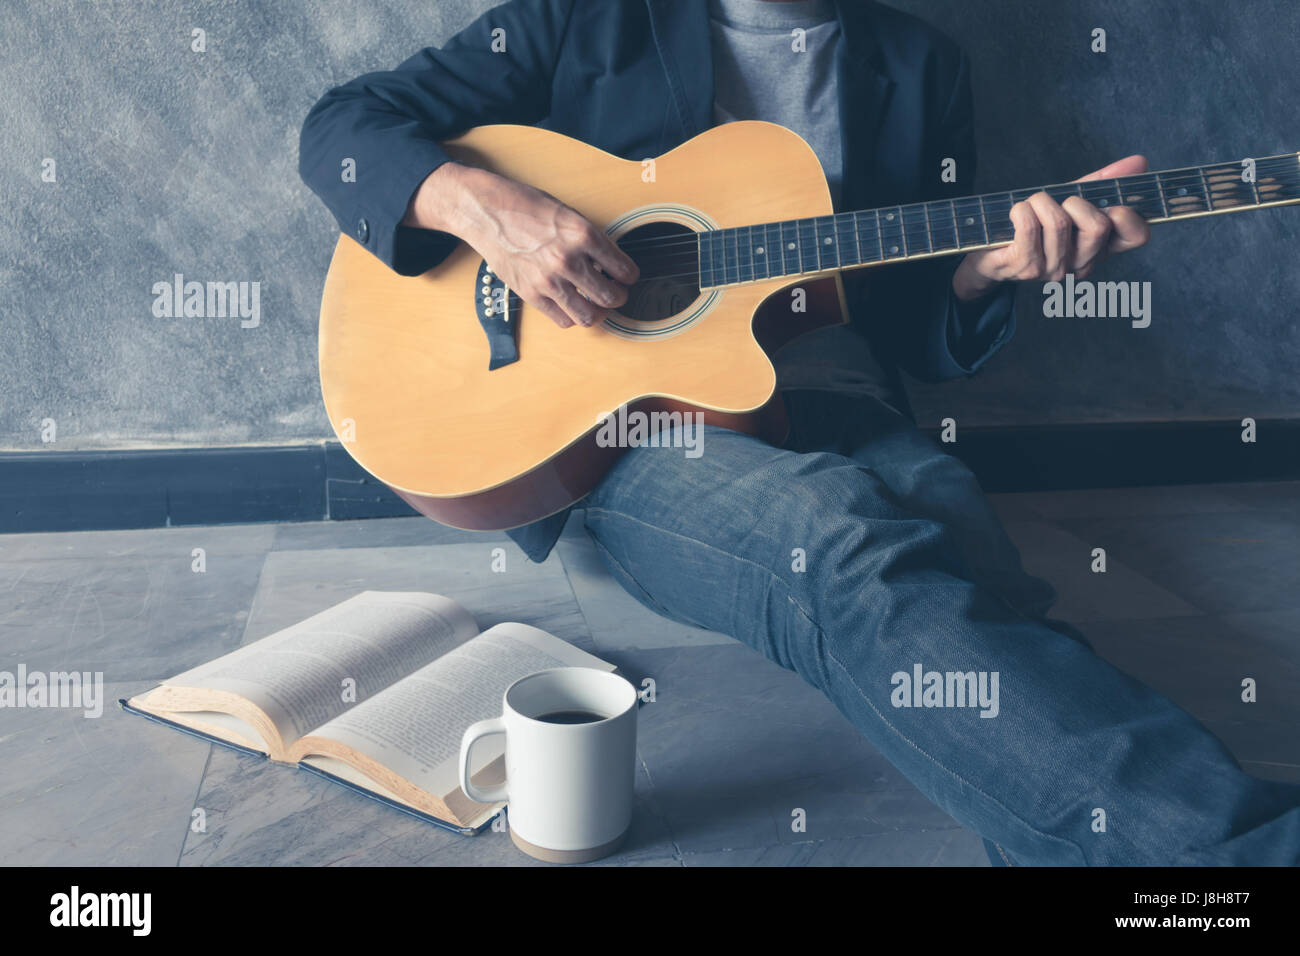 Jouer de la guitare de café chanson écriture Photo Stock - Alamy